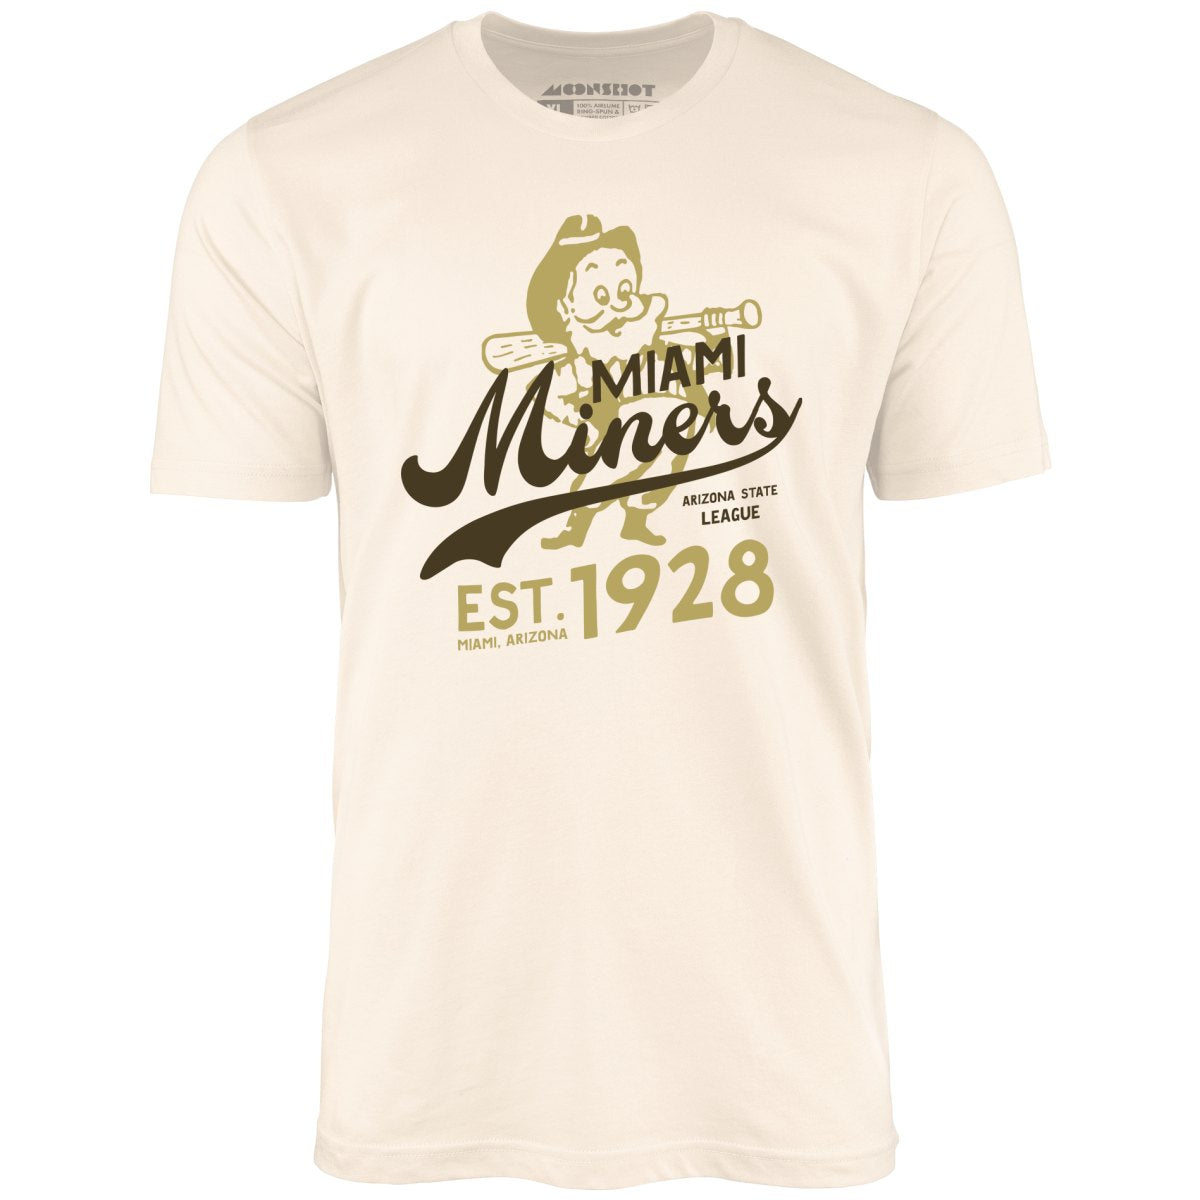 Miami Miners - Arizona - Vintage Defunct Baseball Teams - Unisex T-Shirt